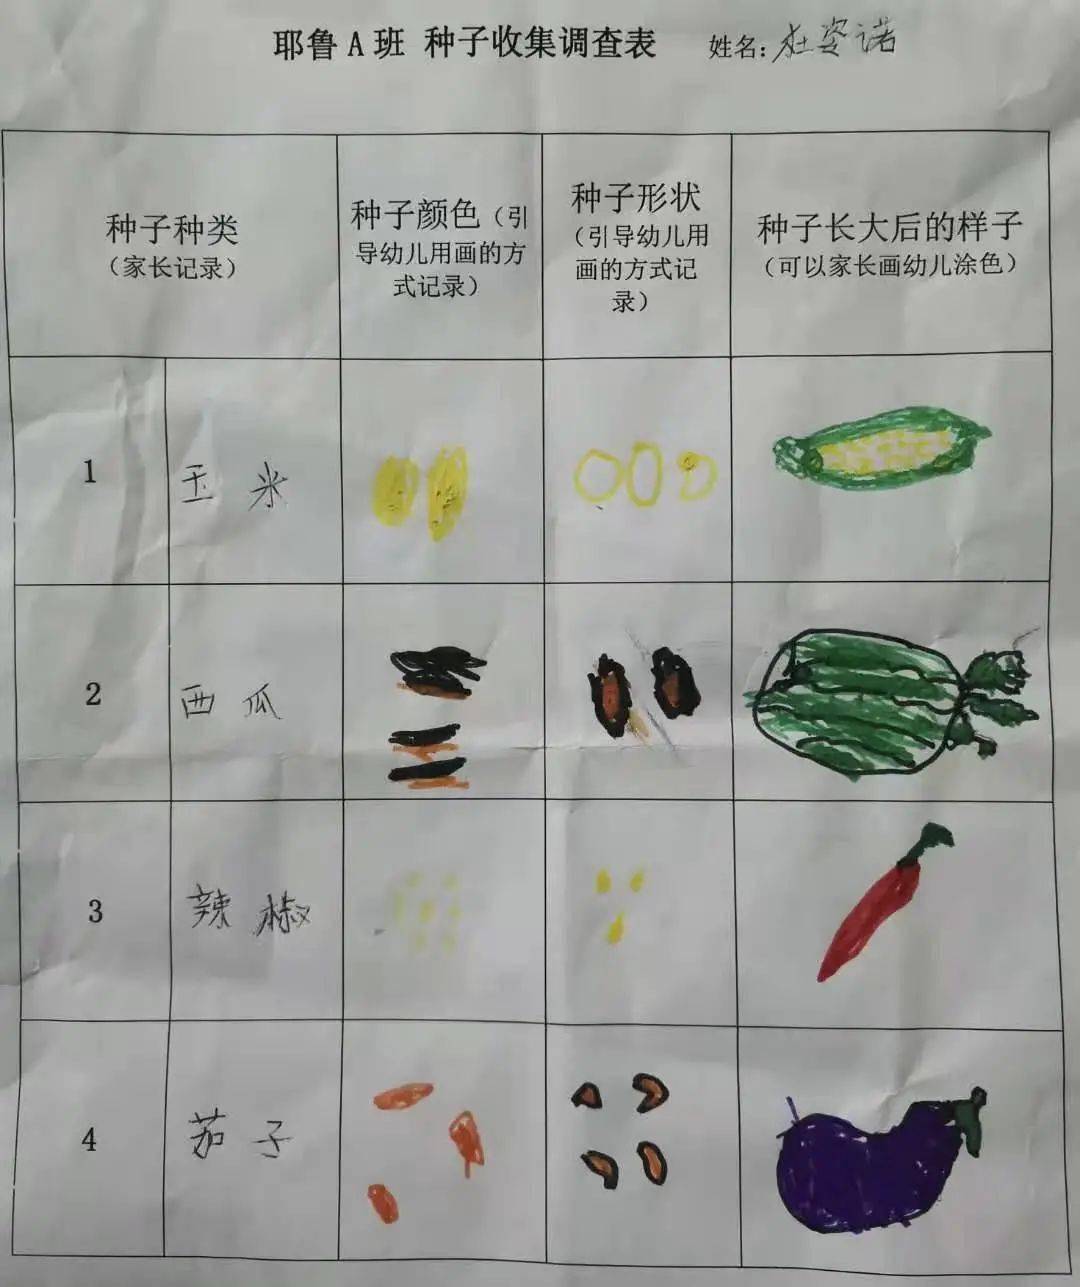 开展了种子的调查行动, 通过调查表, 孩子们分享各种果实种子的颜色